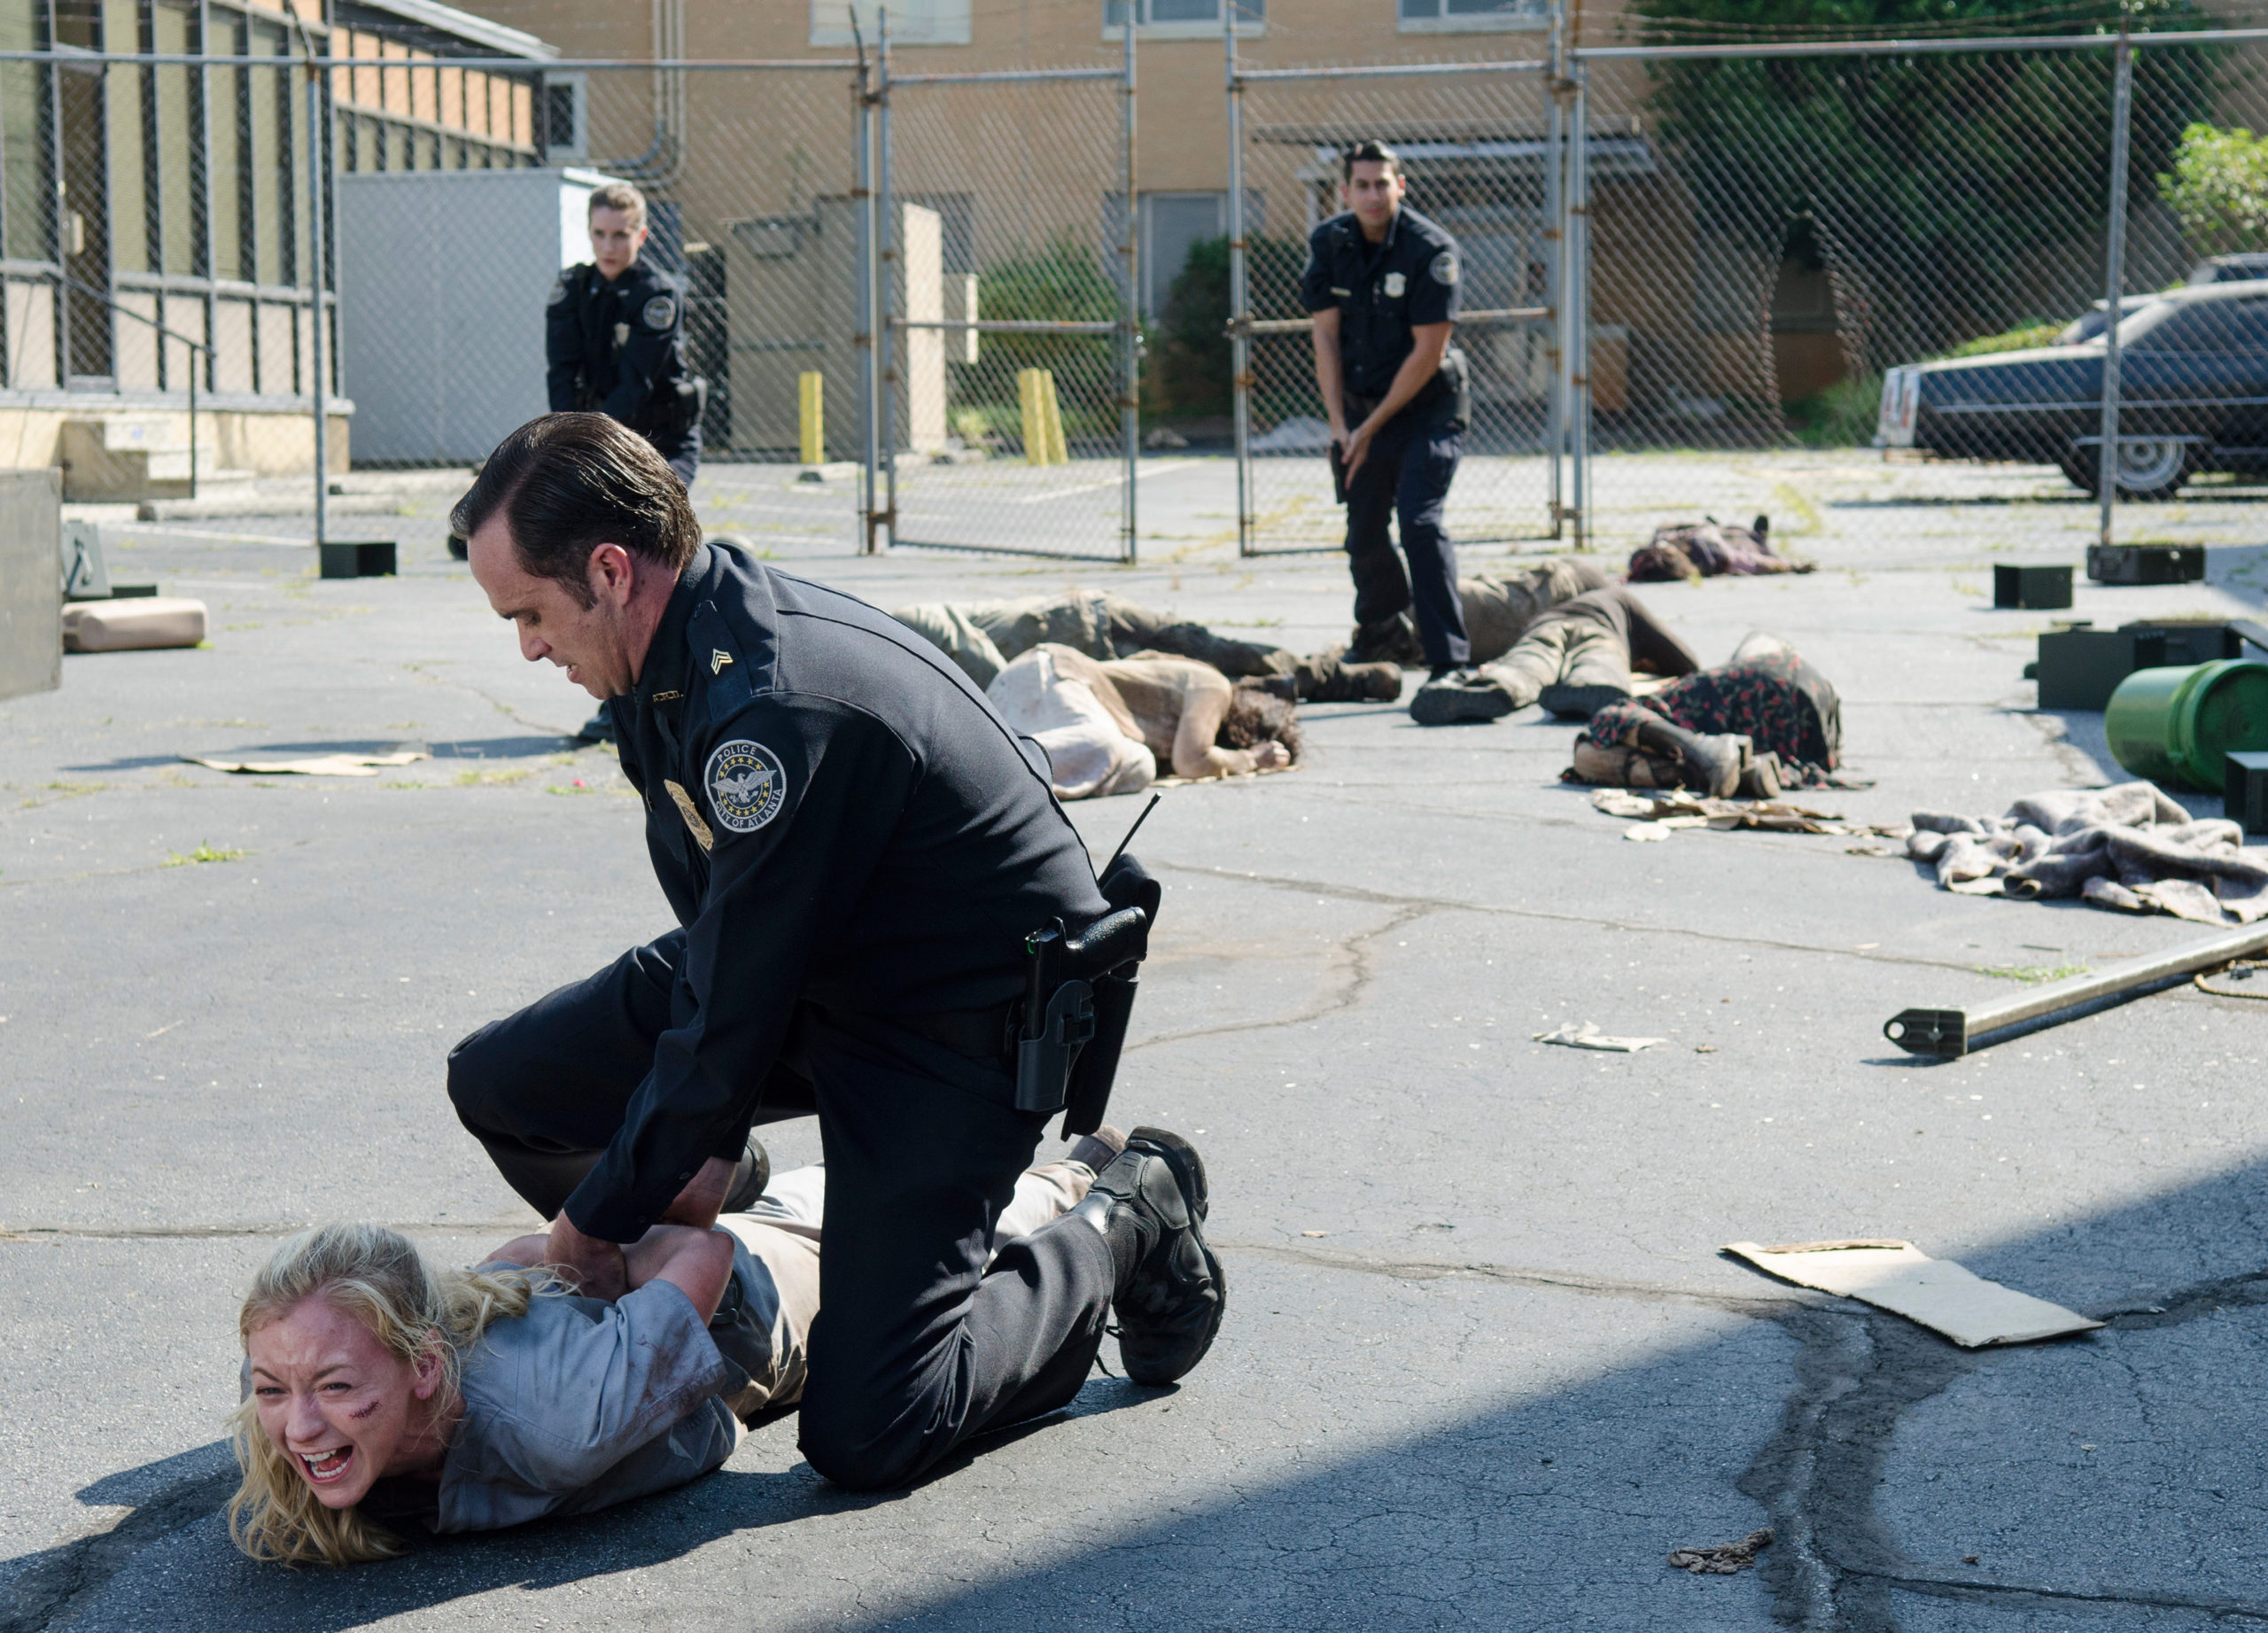 Emily Kinney as Beth Greene and Cullen Moss as Officer Gorman in The Walking Dead - Season 5, Episode 4